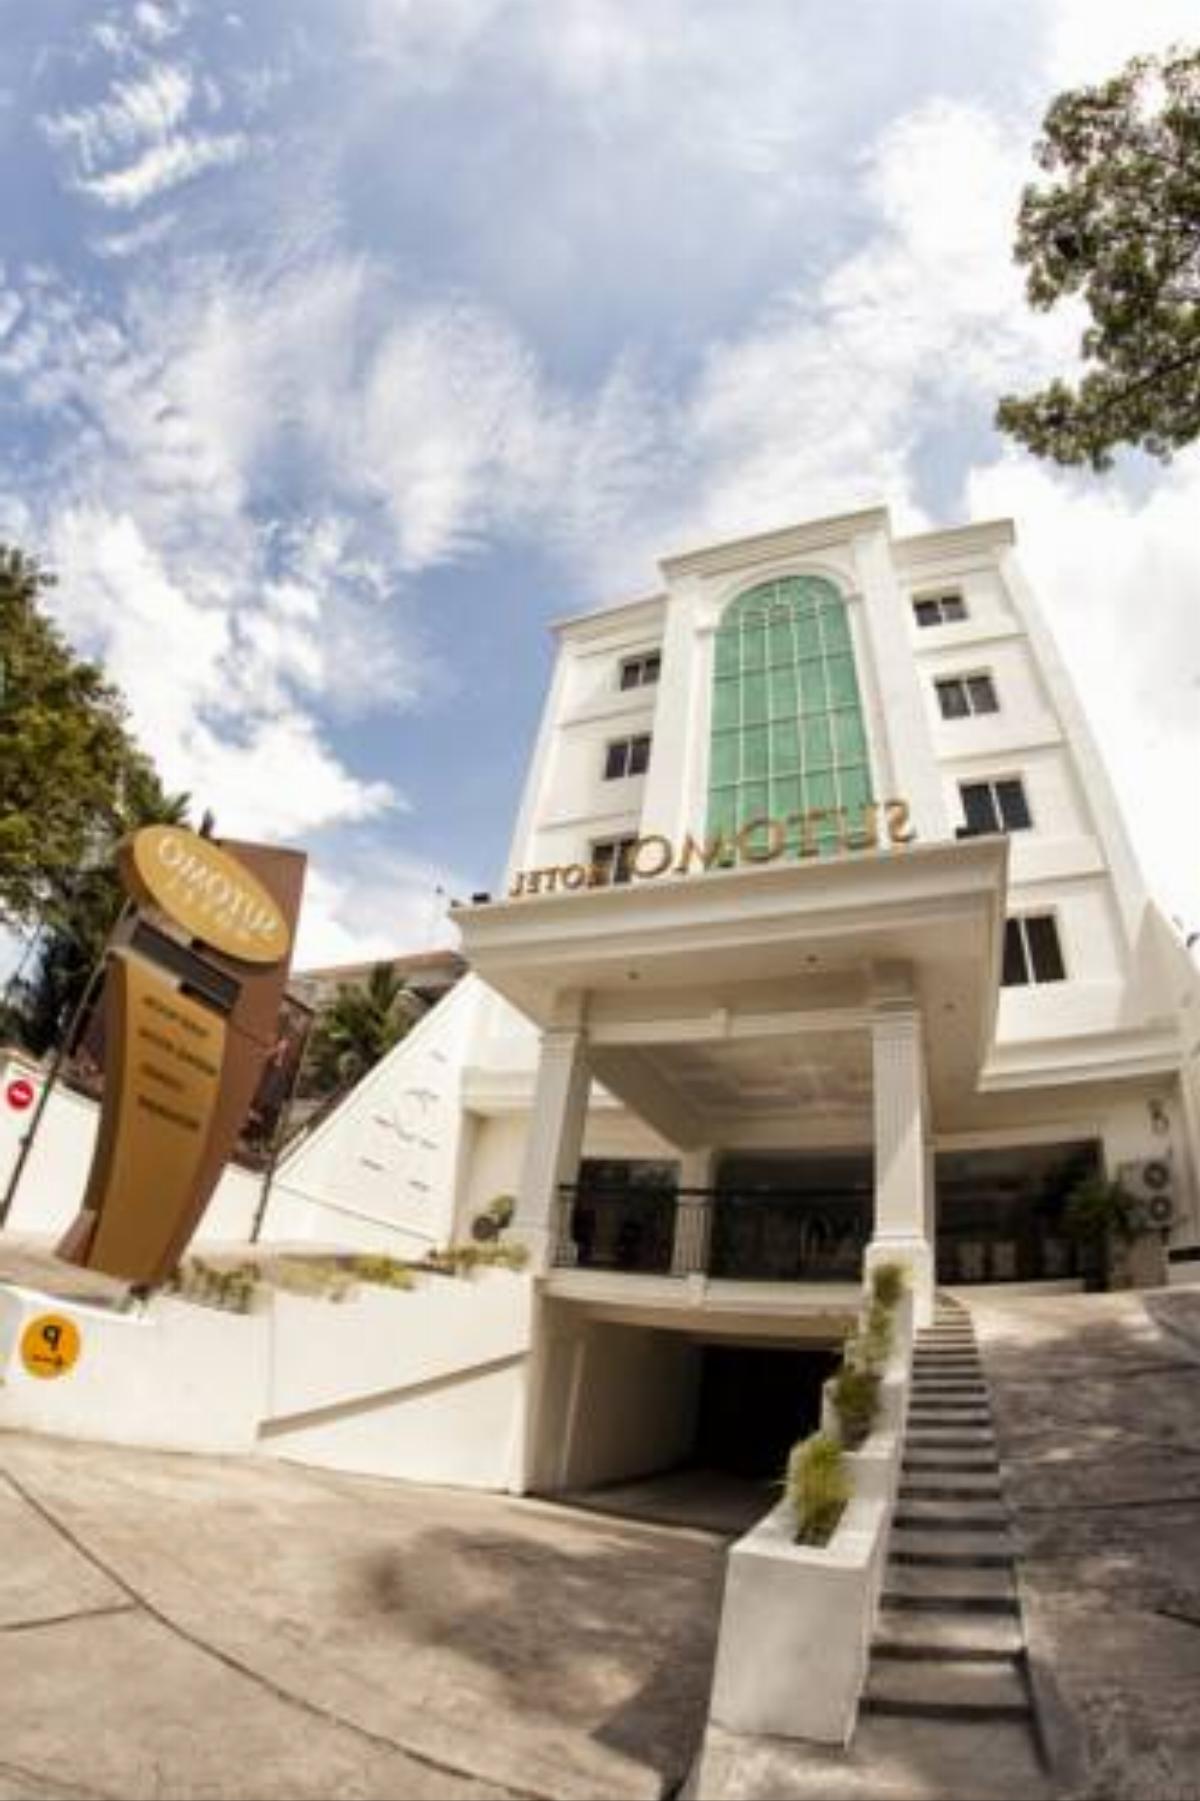 Hotel Sutomo Makassar Hotel Makassar Indonesia